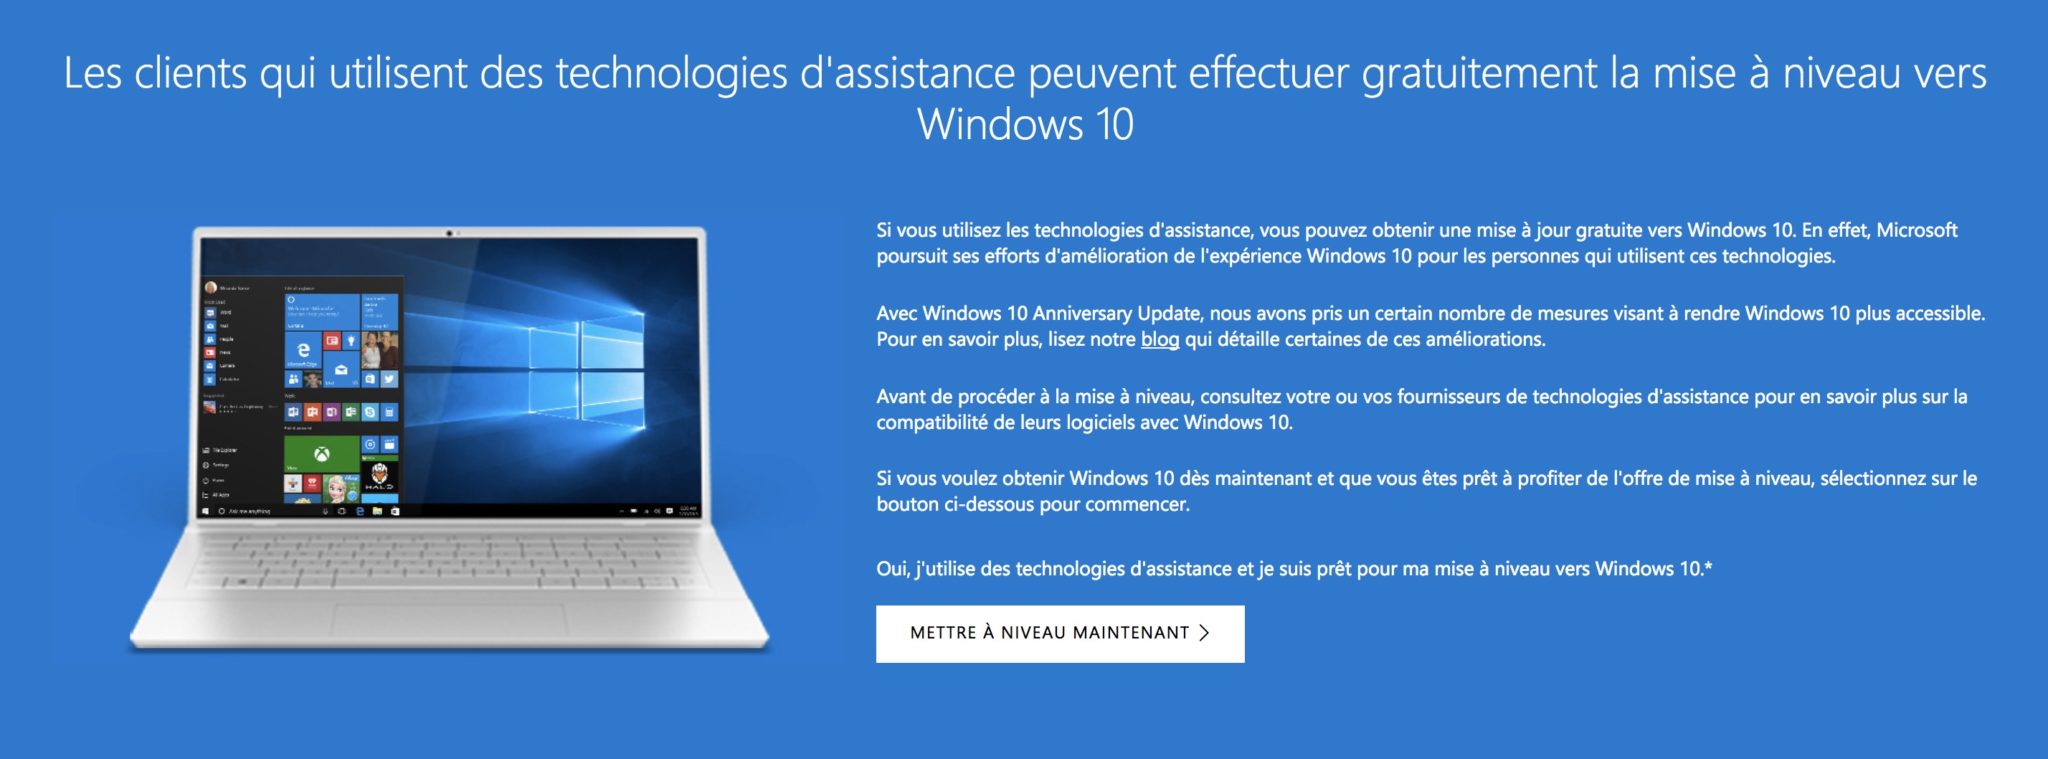 windows 10 toujours offerte mise a niveau gratuite